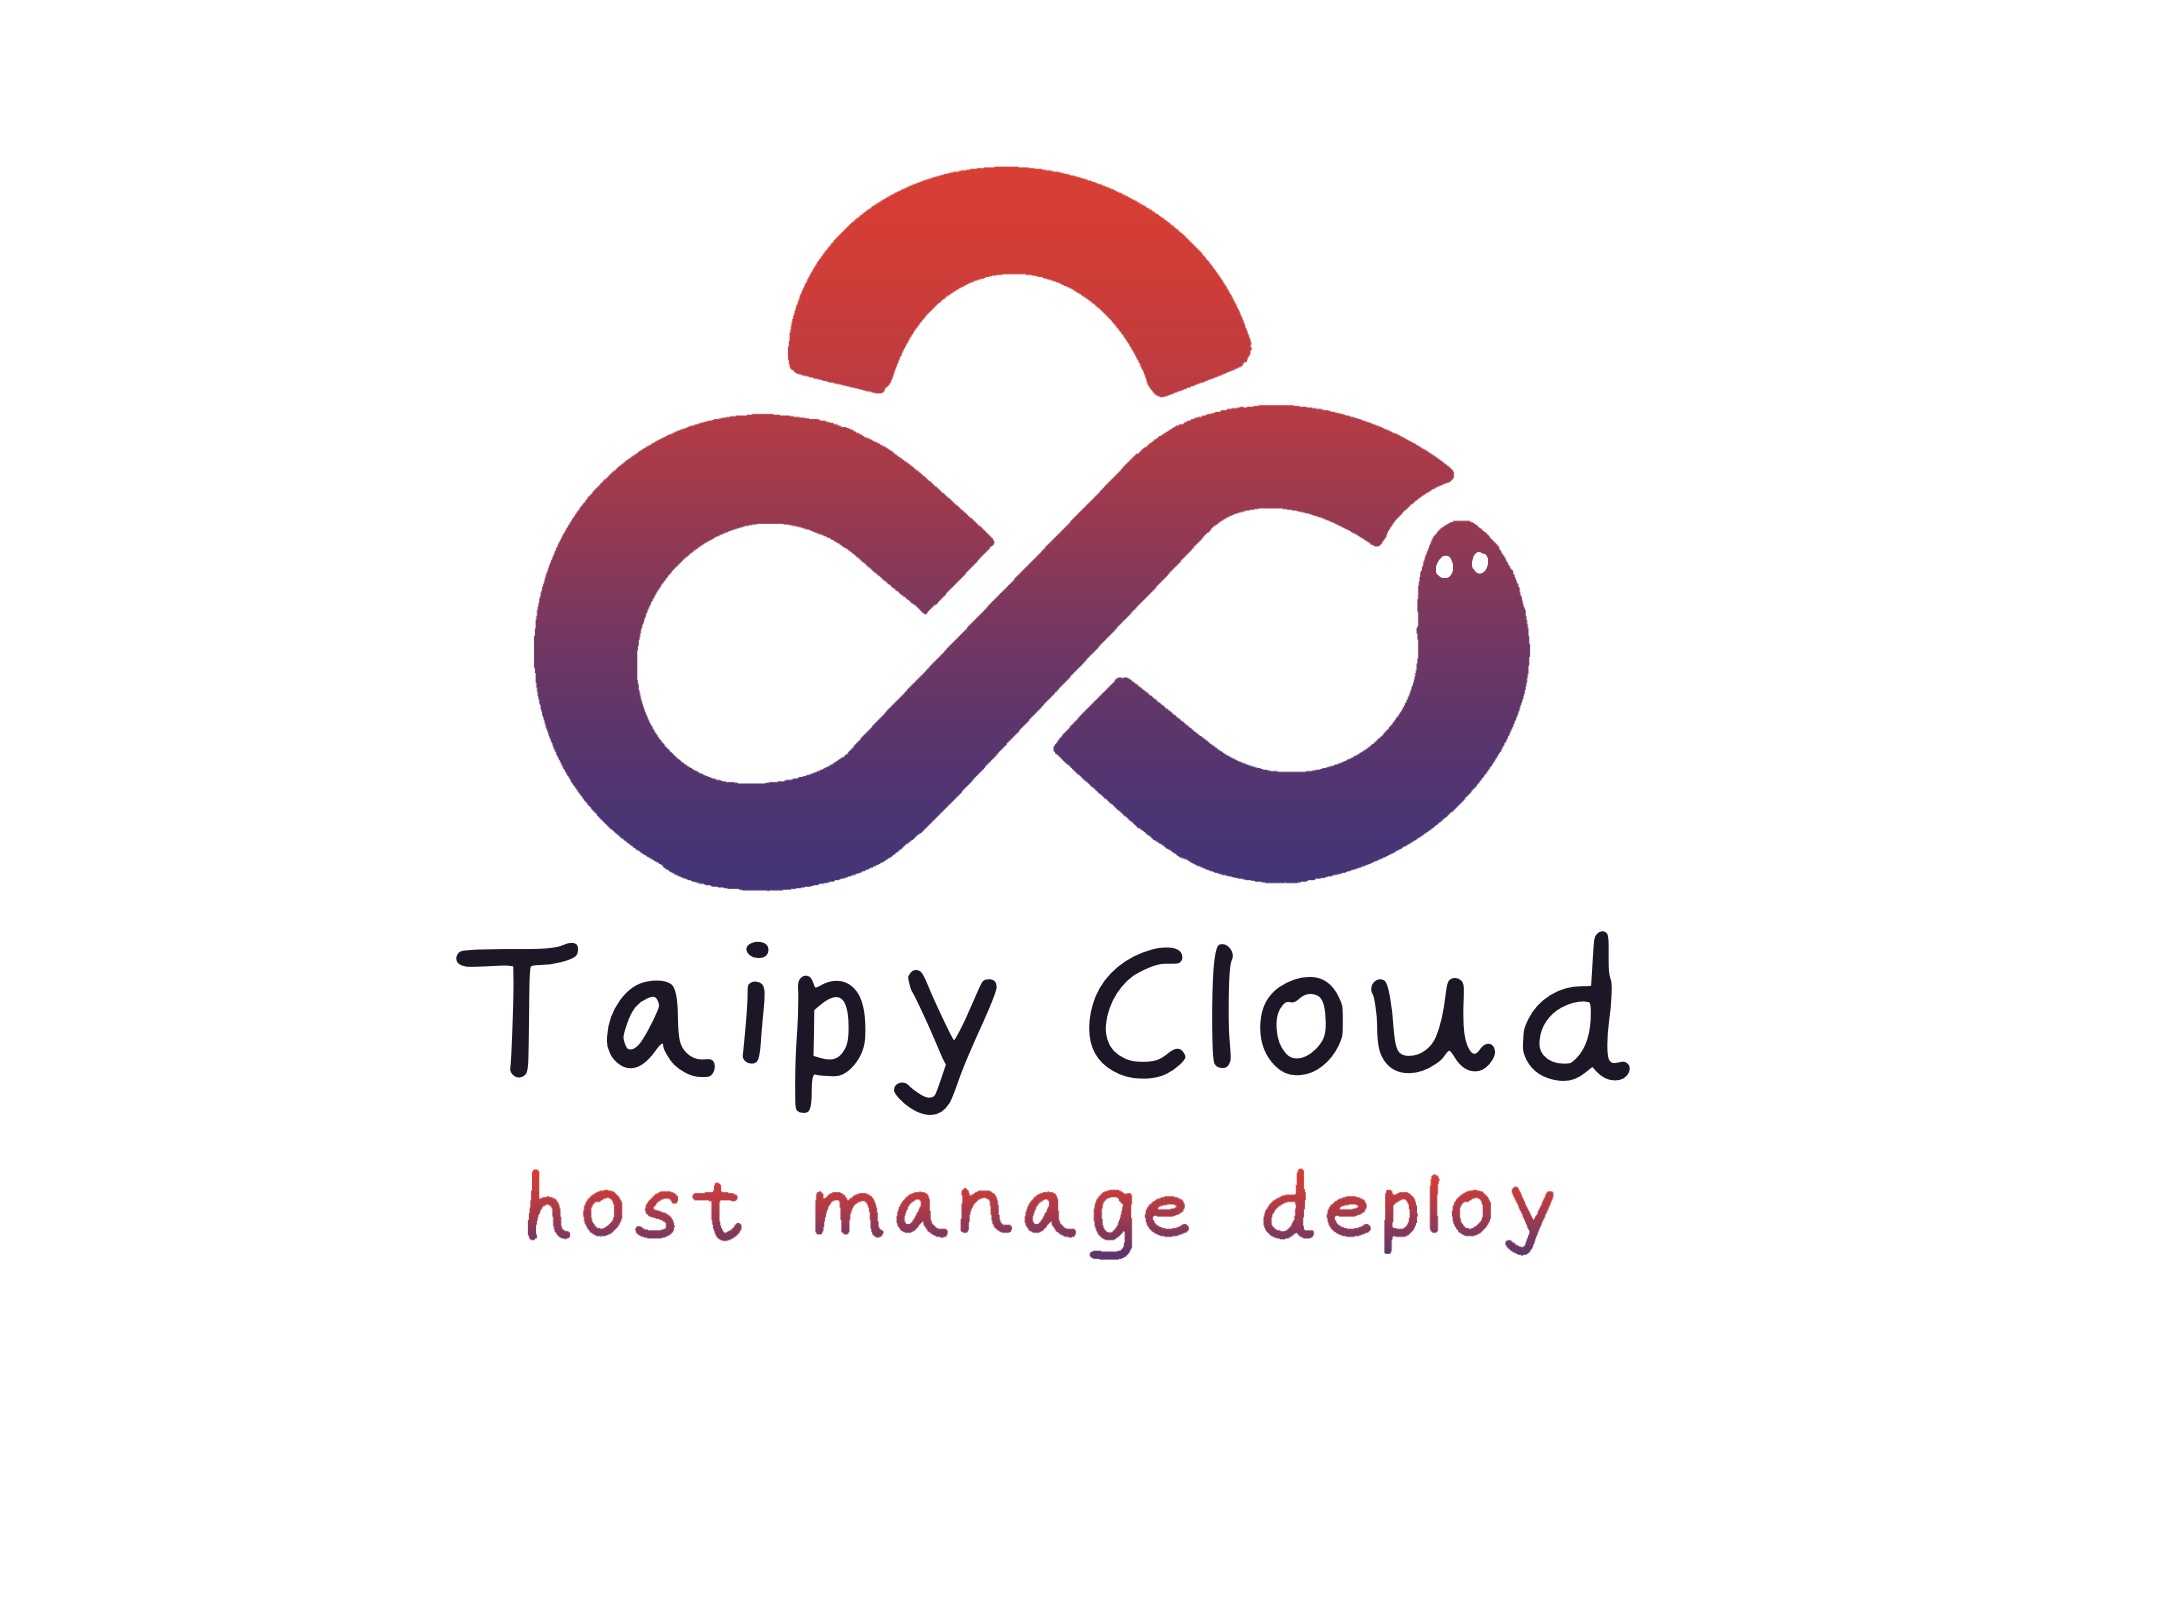 Taipy Cloud